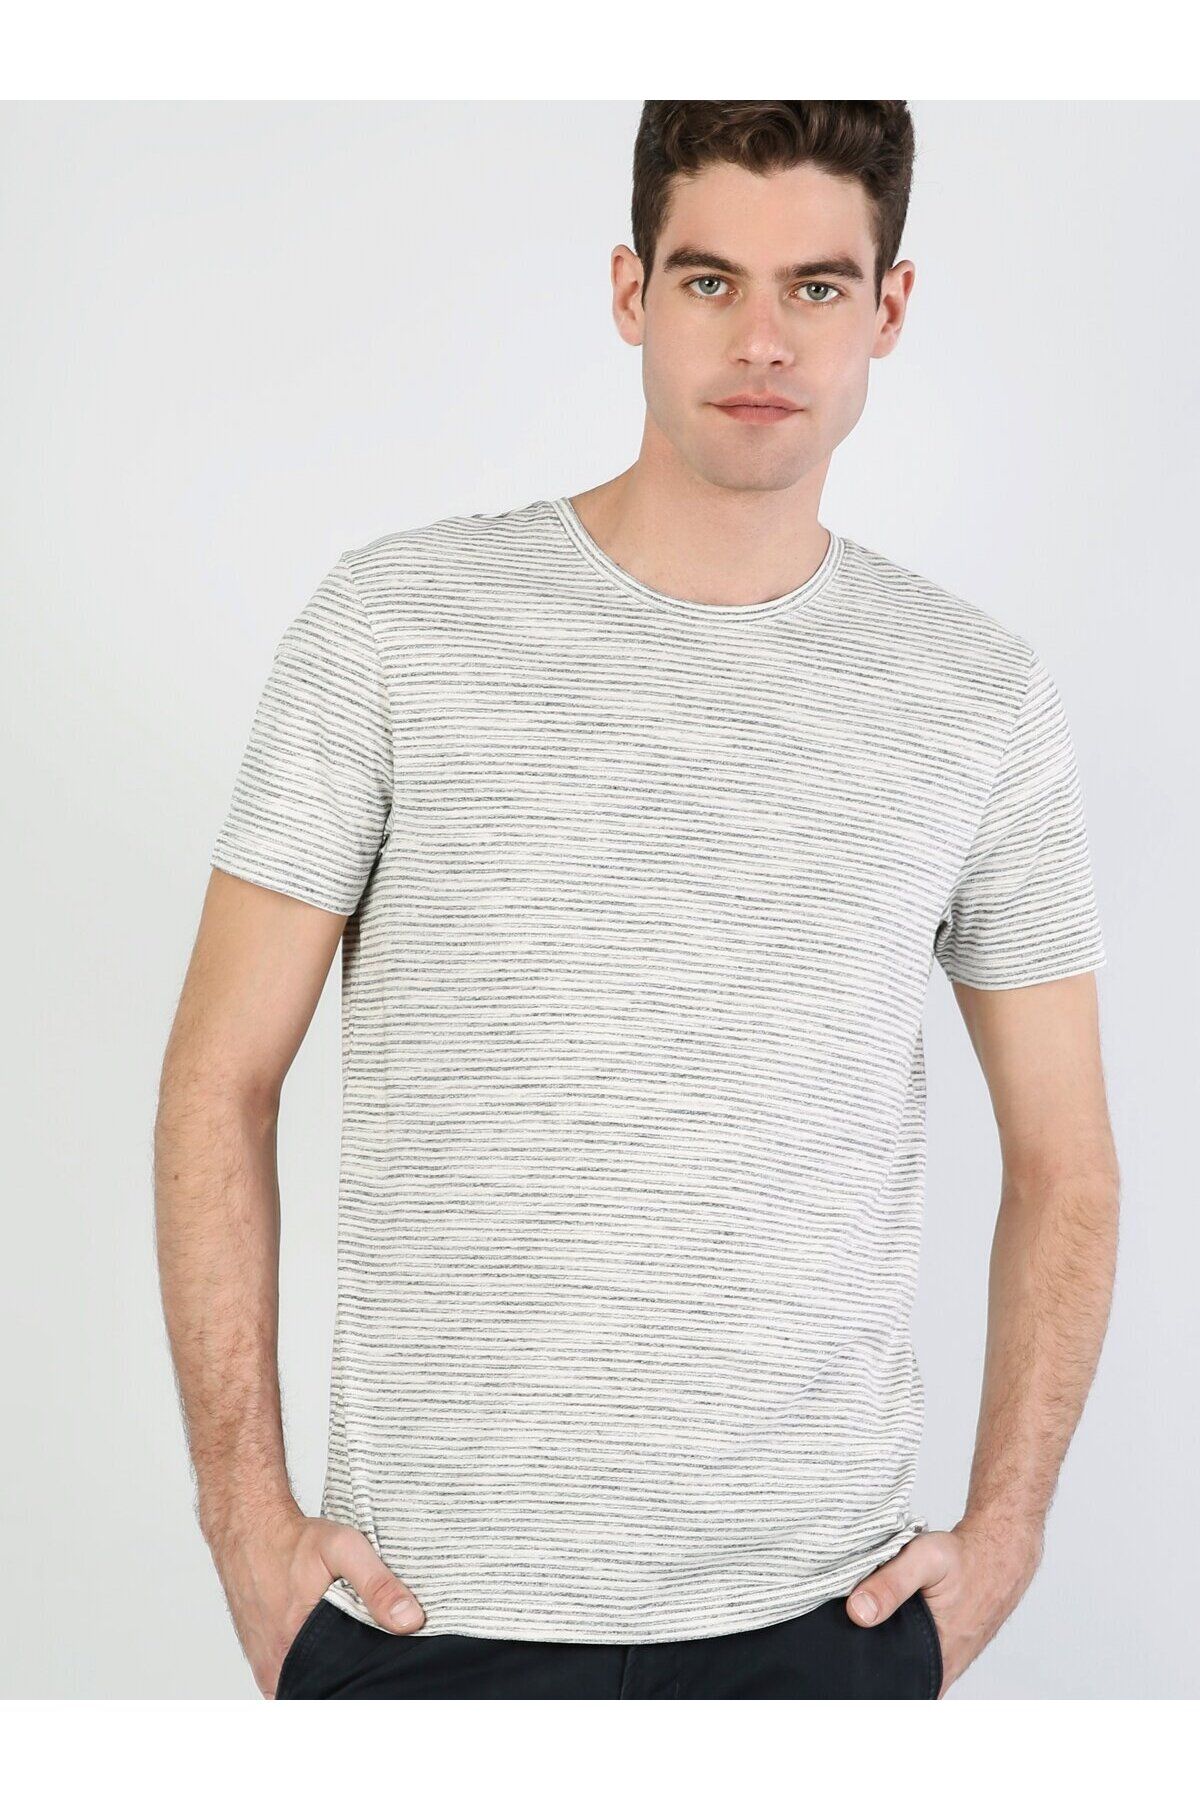 Colin’s تی شرت آستین کوتاه مردانه یقه بافتنی با تناسب معمولی